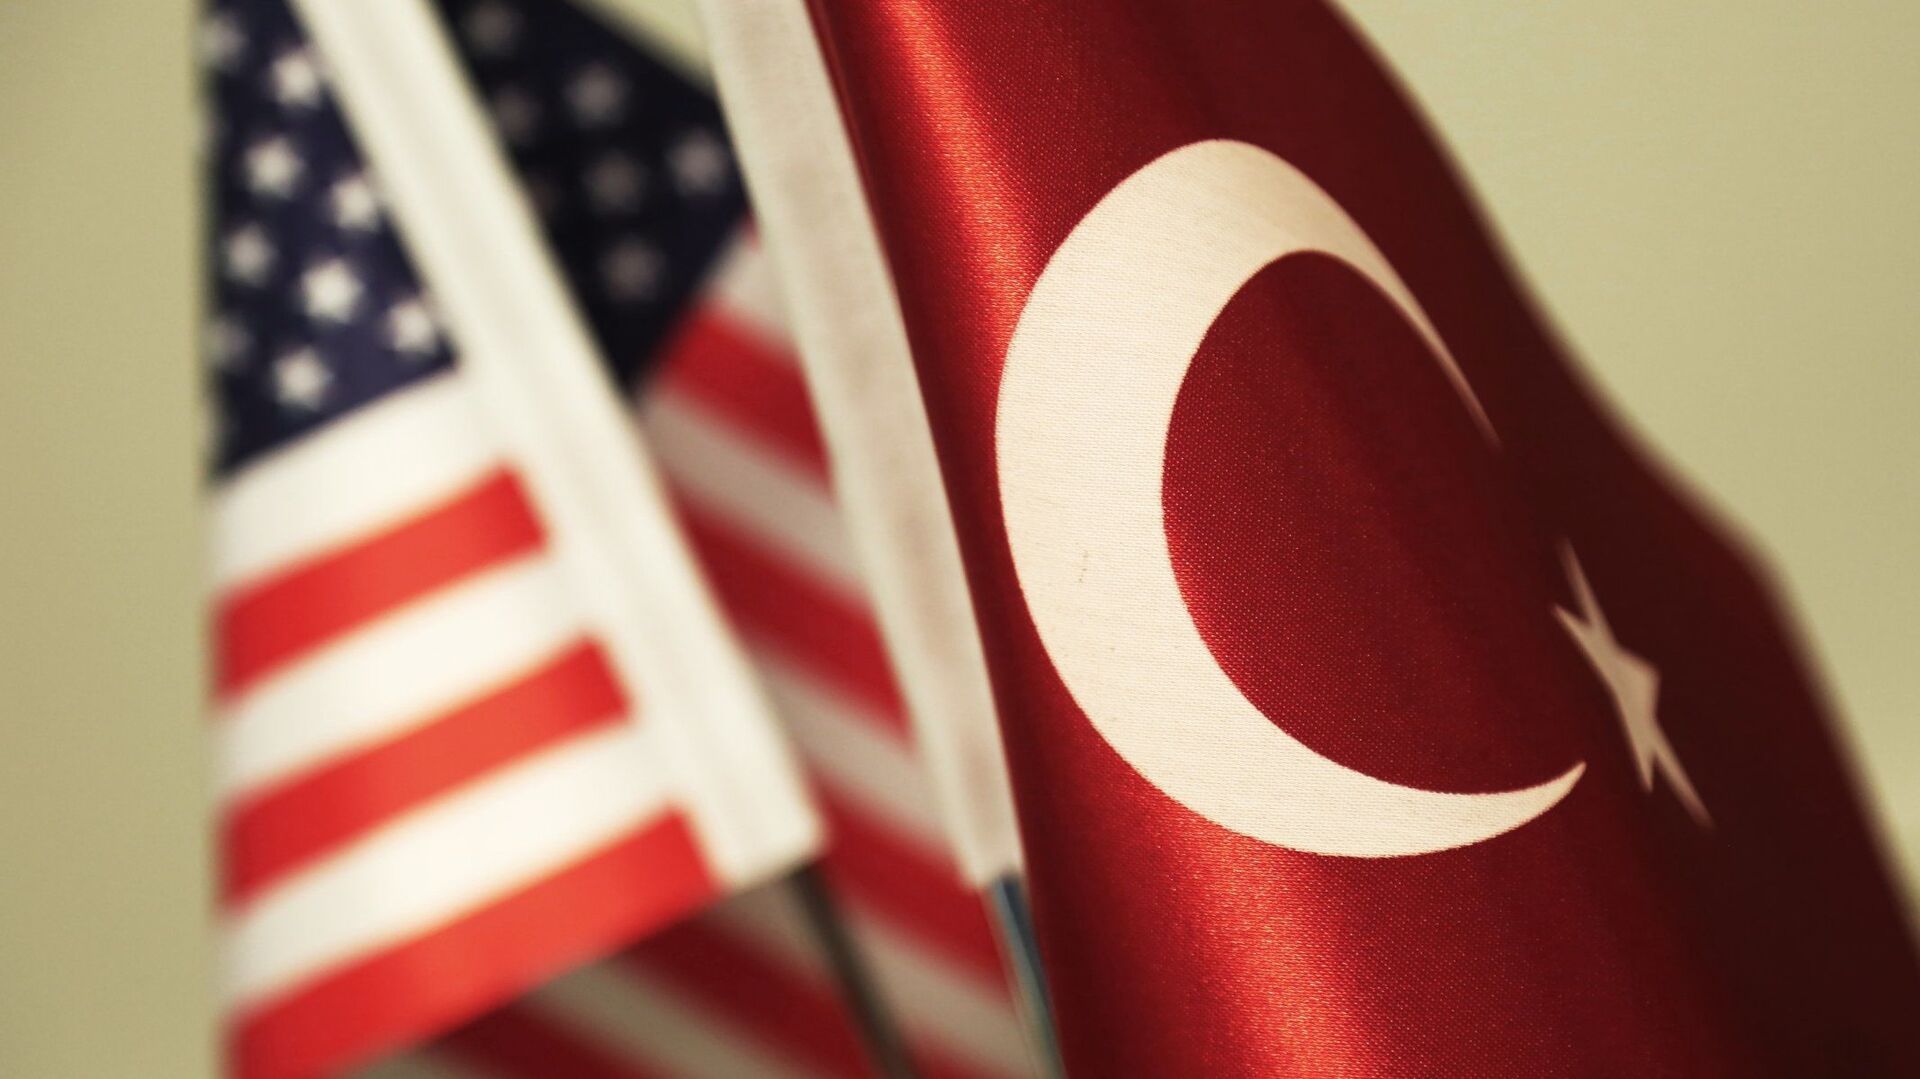 ABD’den Türkiye açıklaması: Terör konusundaki meşru endişelerini tanıyoruz